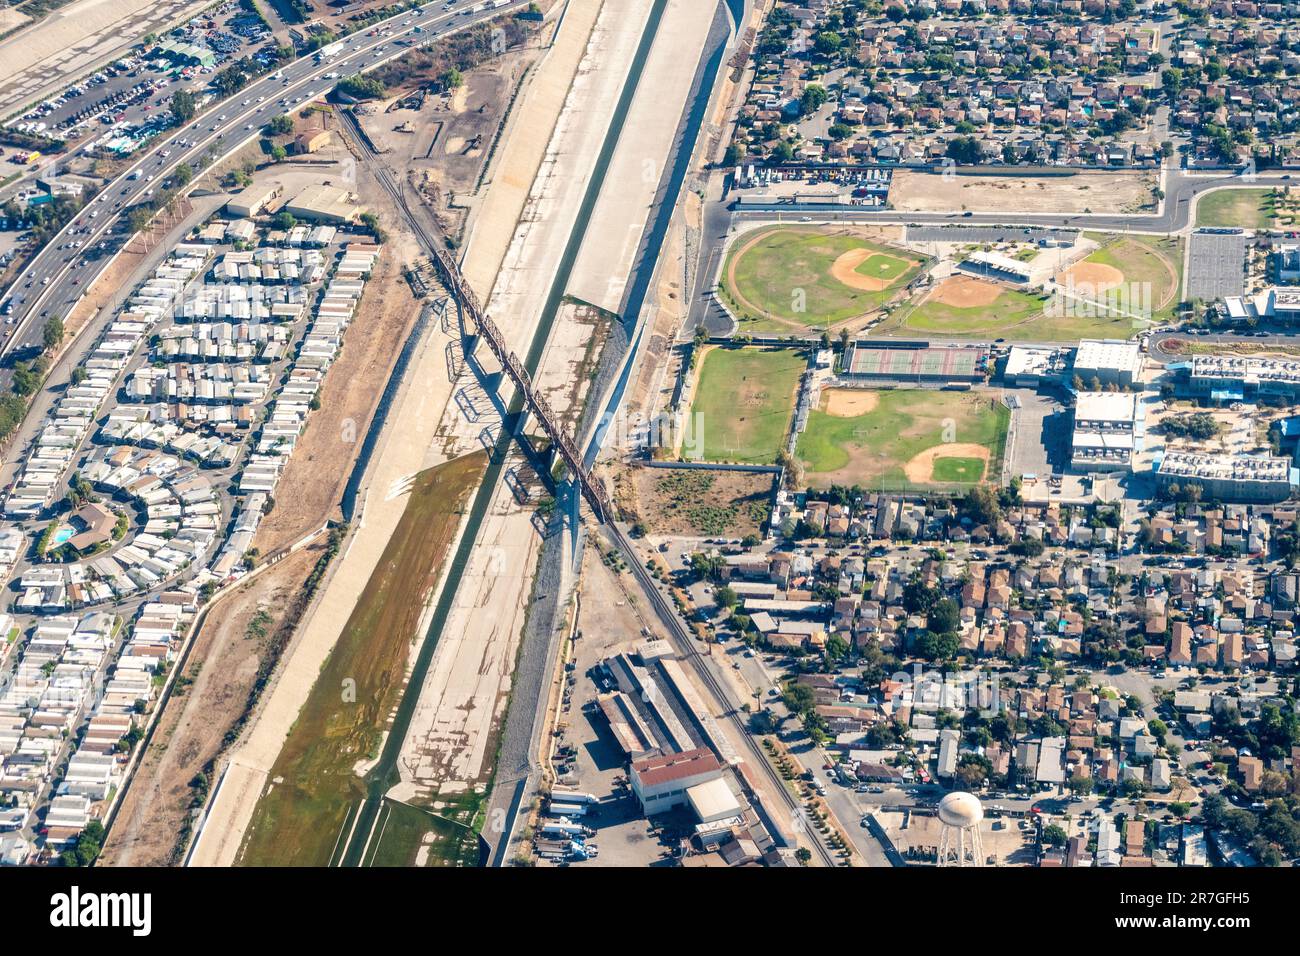 South Gate, Kalifornien, USA – Blick aus der Vogelperspektive auf die Old South Gate Train Bridge, den Los Angeles River, die Legacy High School und das vorstädtische South Gate in Calif Stockfoto